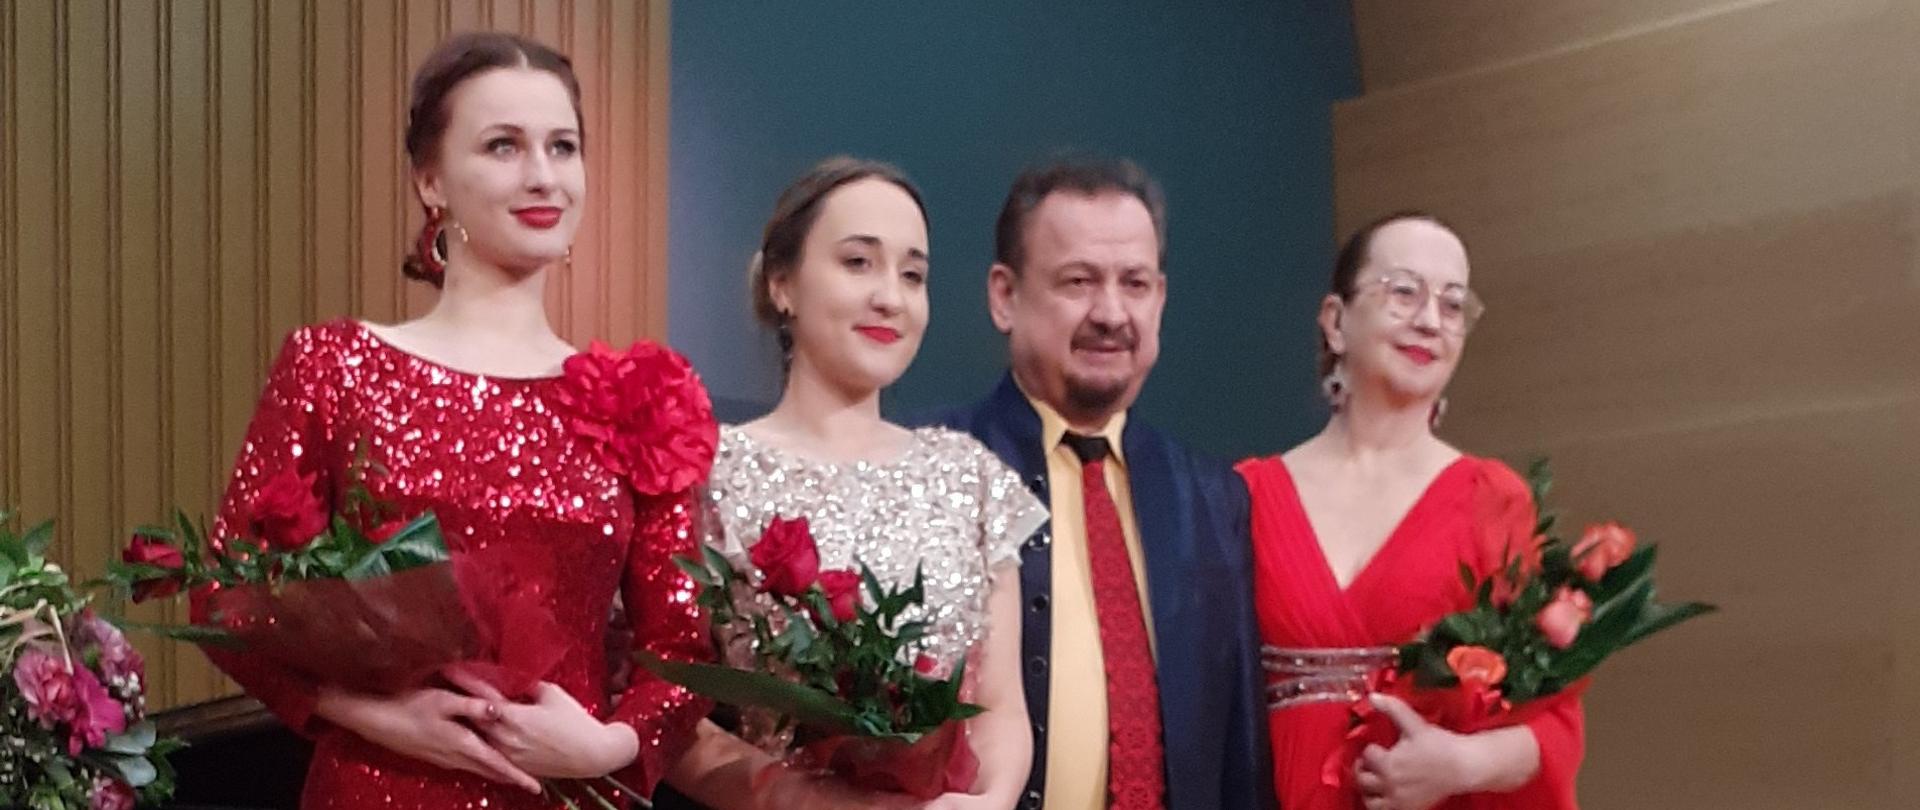 Zdjęcie przedstawia prof.Aleksandera Teligę wraz z małżonką-pianistką Haliną Teligą oraz gośćmi: Magdaleną Abłażewicz - sopran, Emilią Rabczak - mezzosopran,